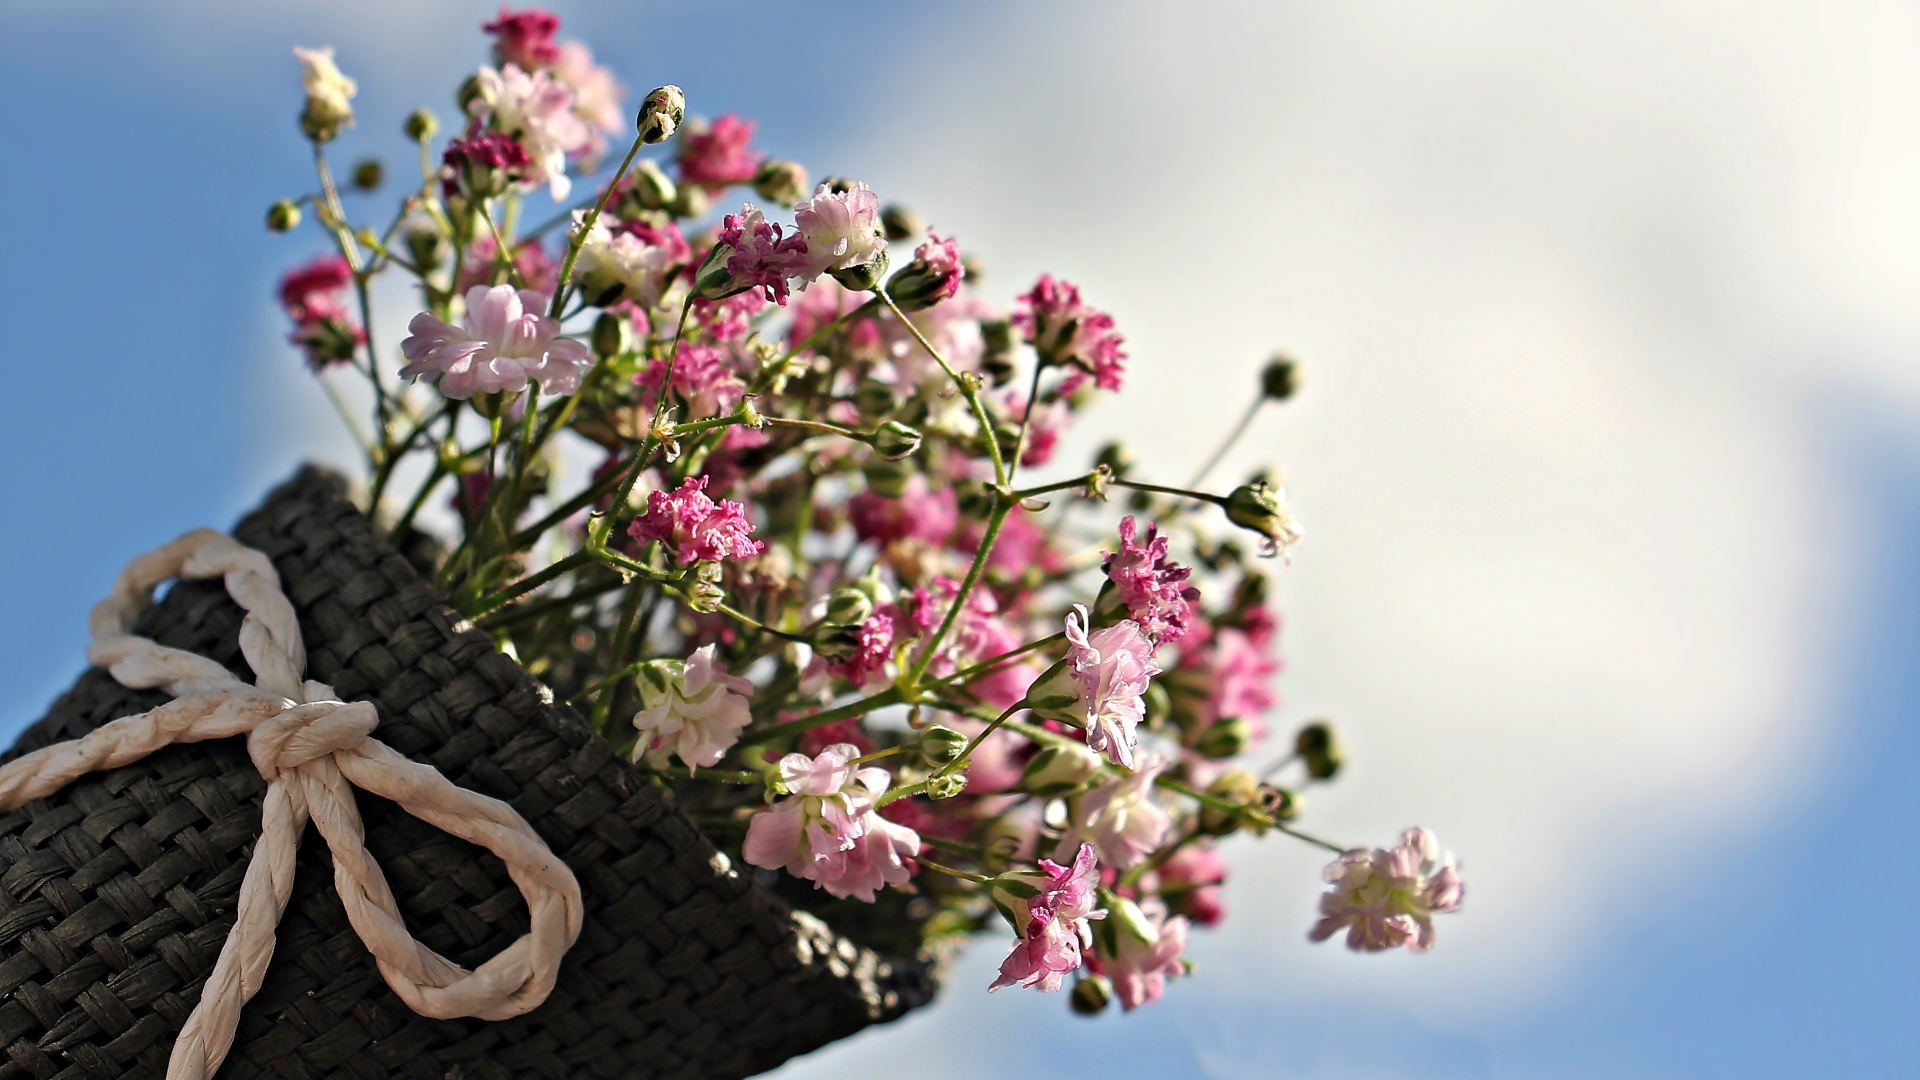 Букет розовых цветов в корзине на фоне голубого неба